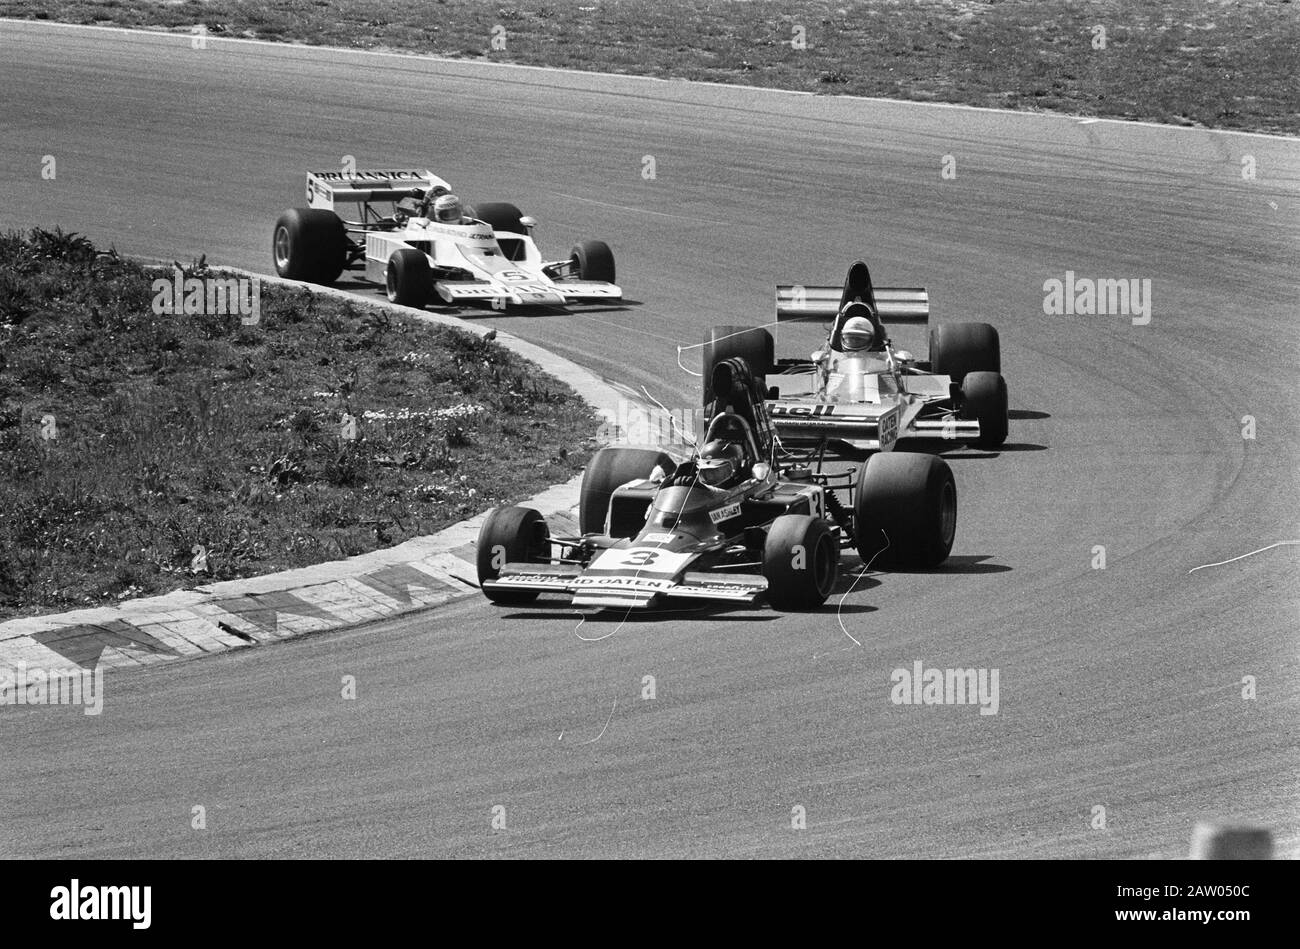 Rennen für die Formel 5000 im Zandvoort Moment während des Rennens Datum: 19. Mai 1975 Ort: Nordholland, Zandvoort Schlüsselwörter: Autorennen, Strecken, Rennwagen Stockfoto